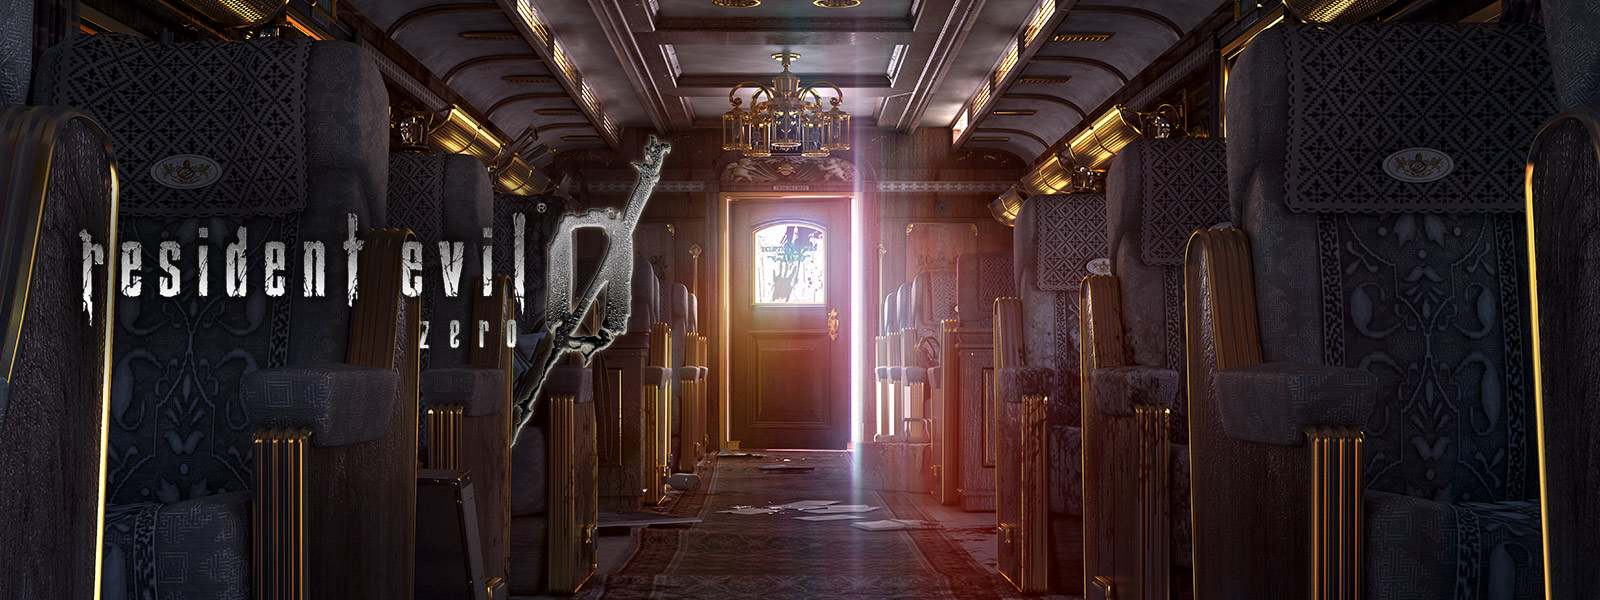 Resident Evil 0, skjermbilde av dekorert togvogninteriør